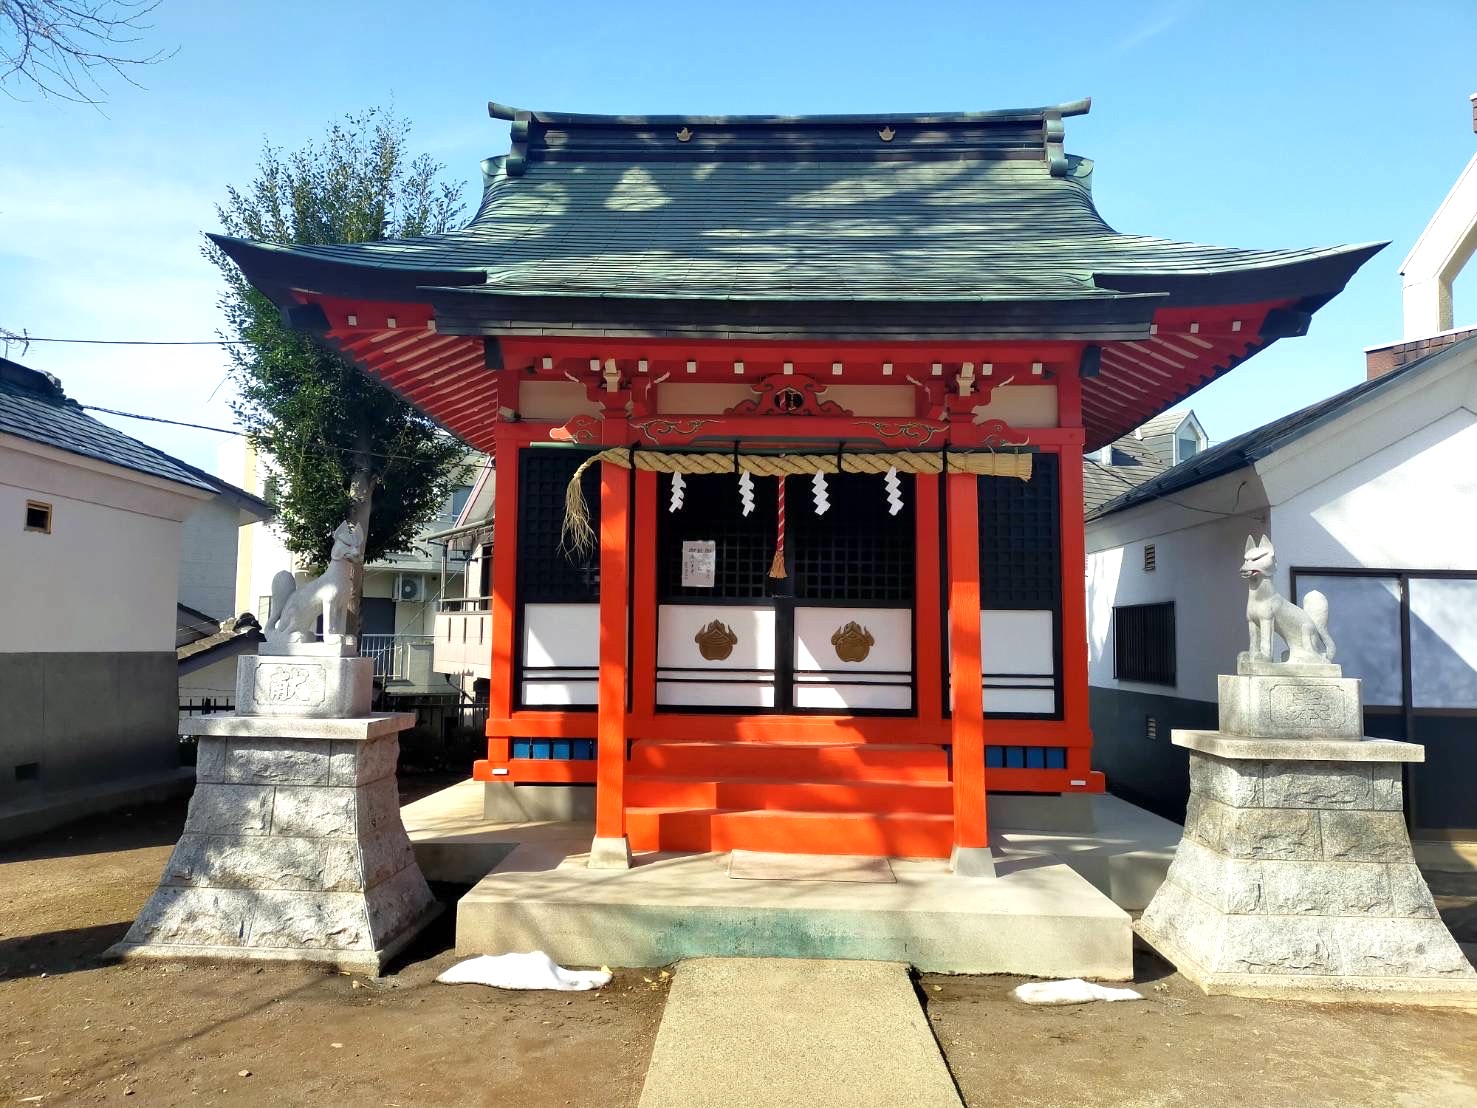 篠塚稲荷神社